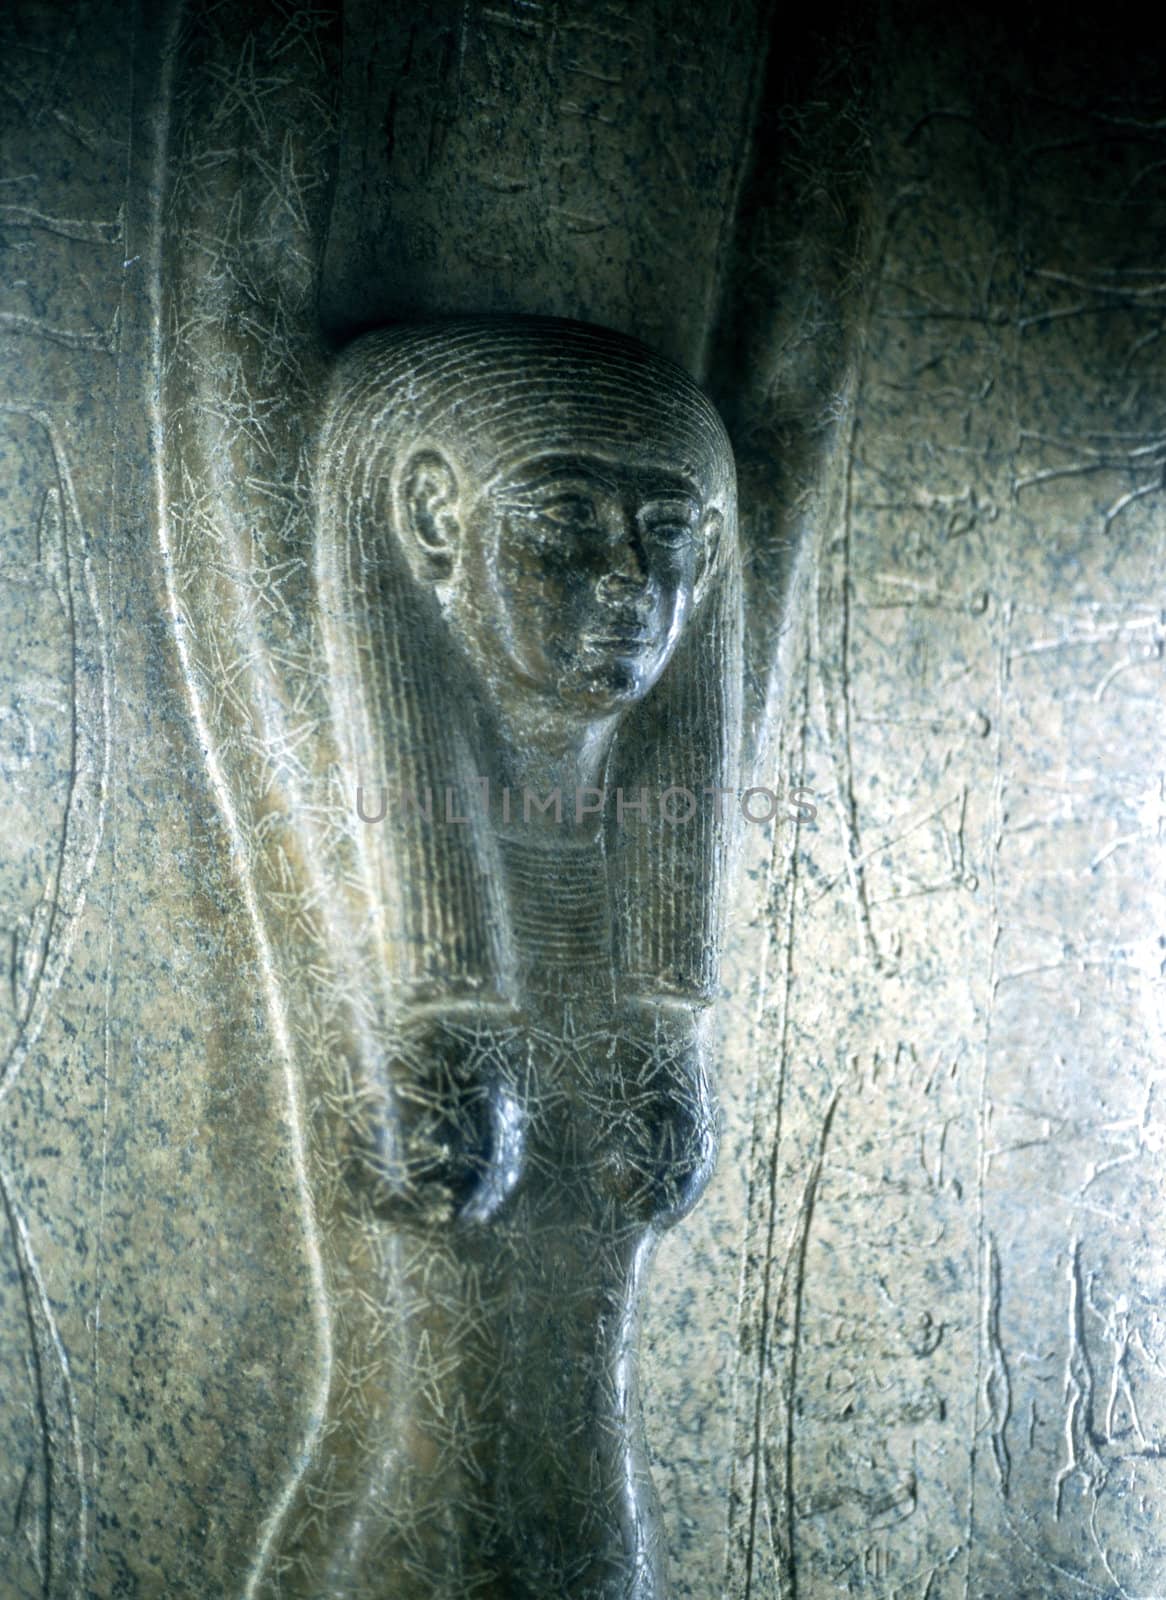 Sculpture,Egyptian Museum, Cairo by jol66